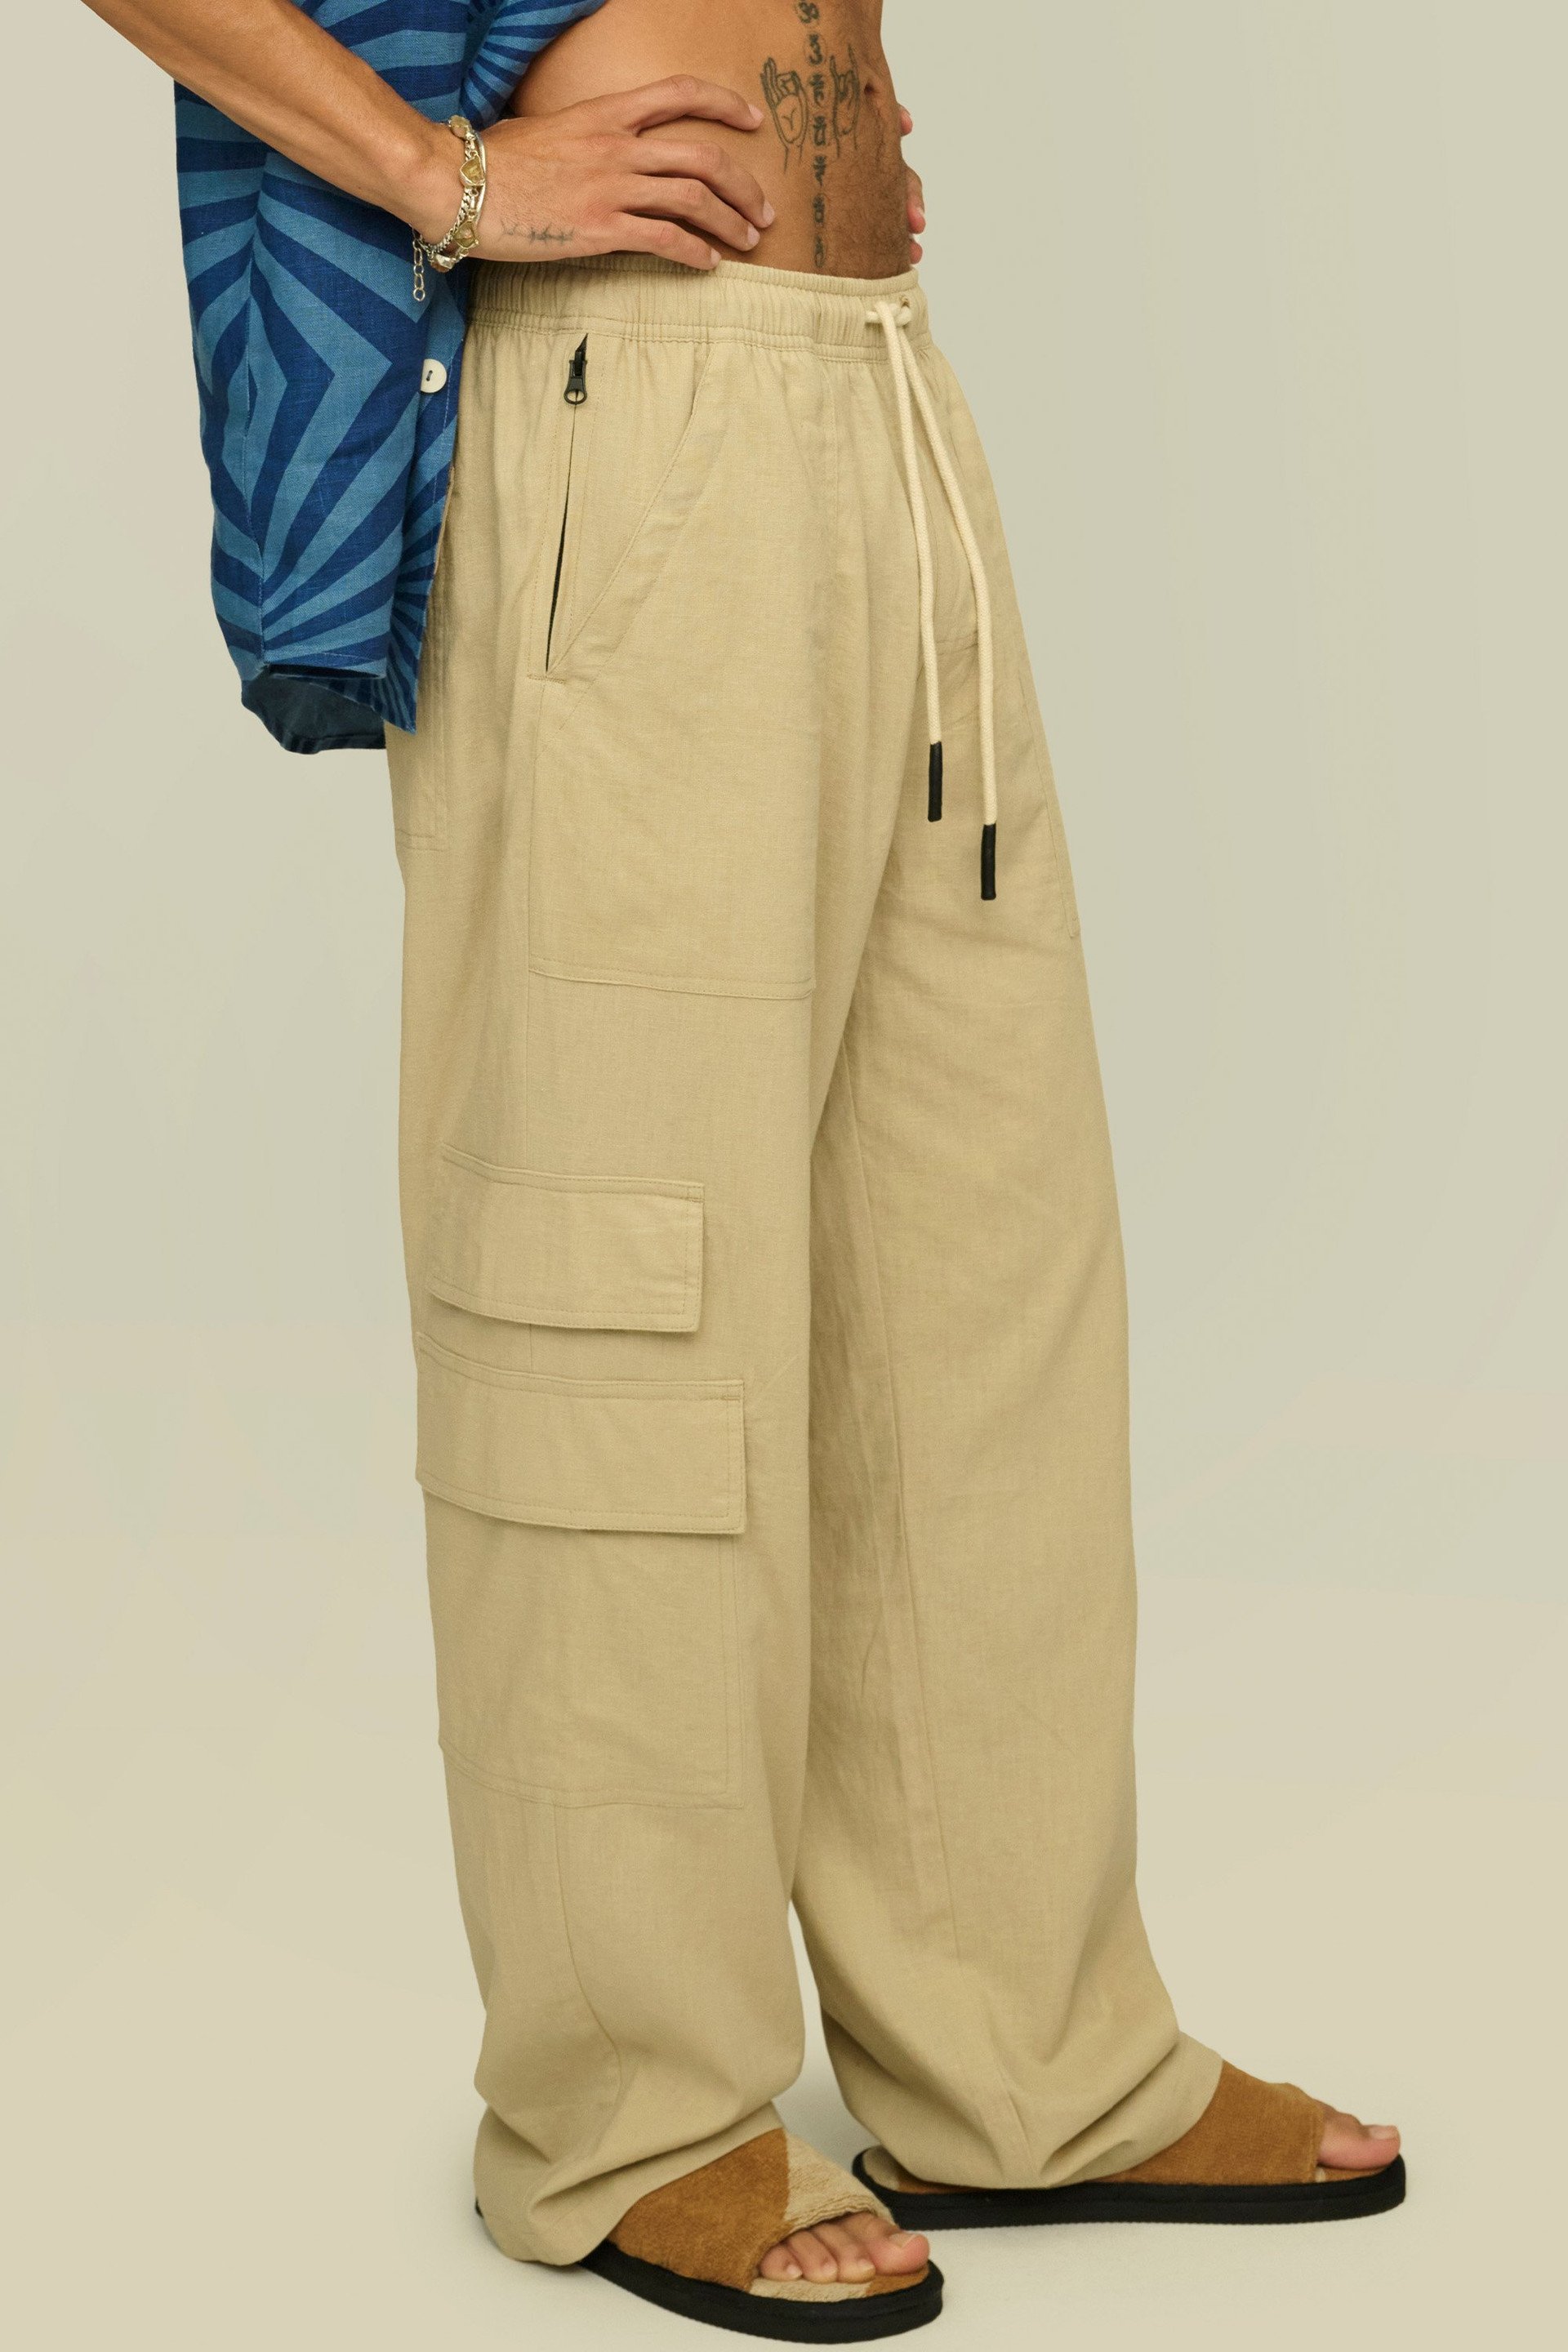 Beige Cargo Pants - Linen Jogger Pants - Paperbag Waist Pants - Lulus